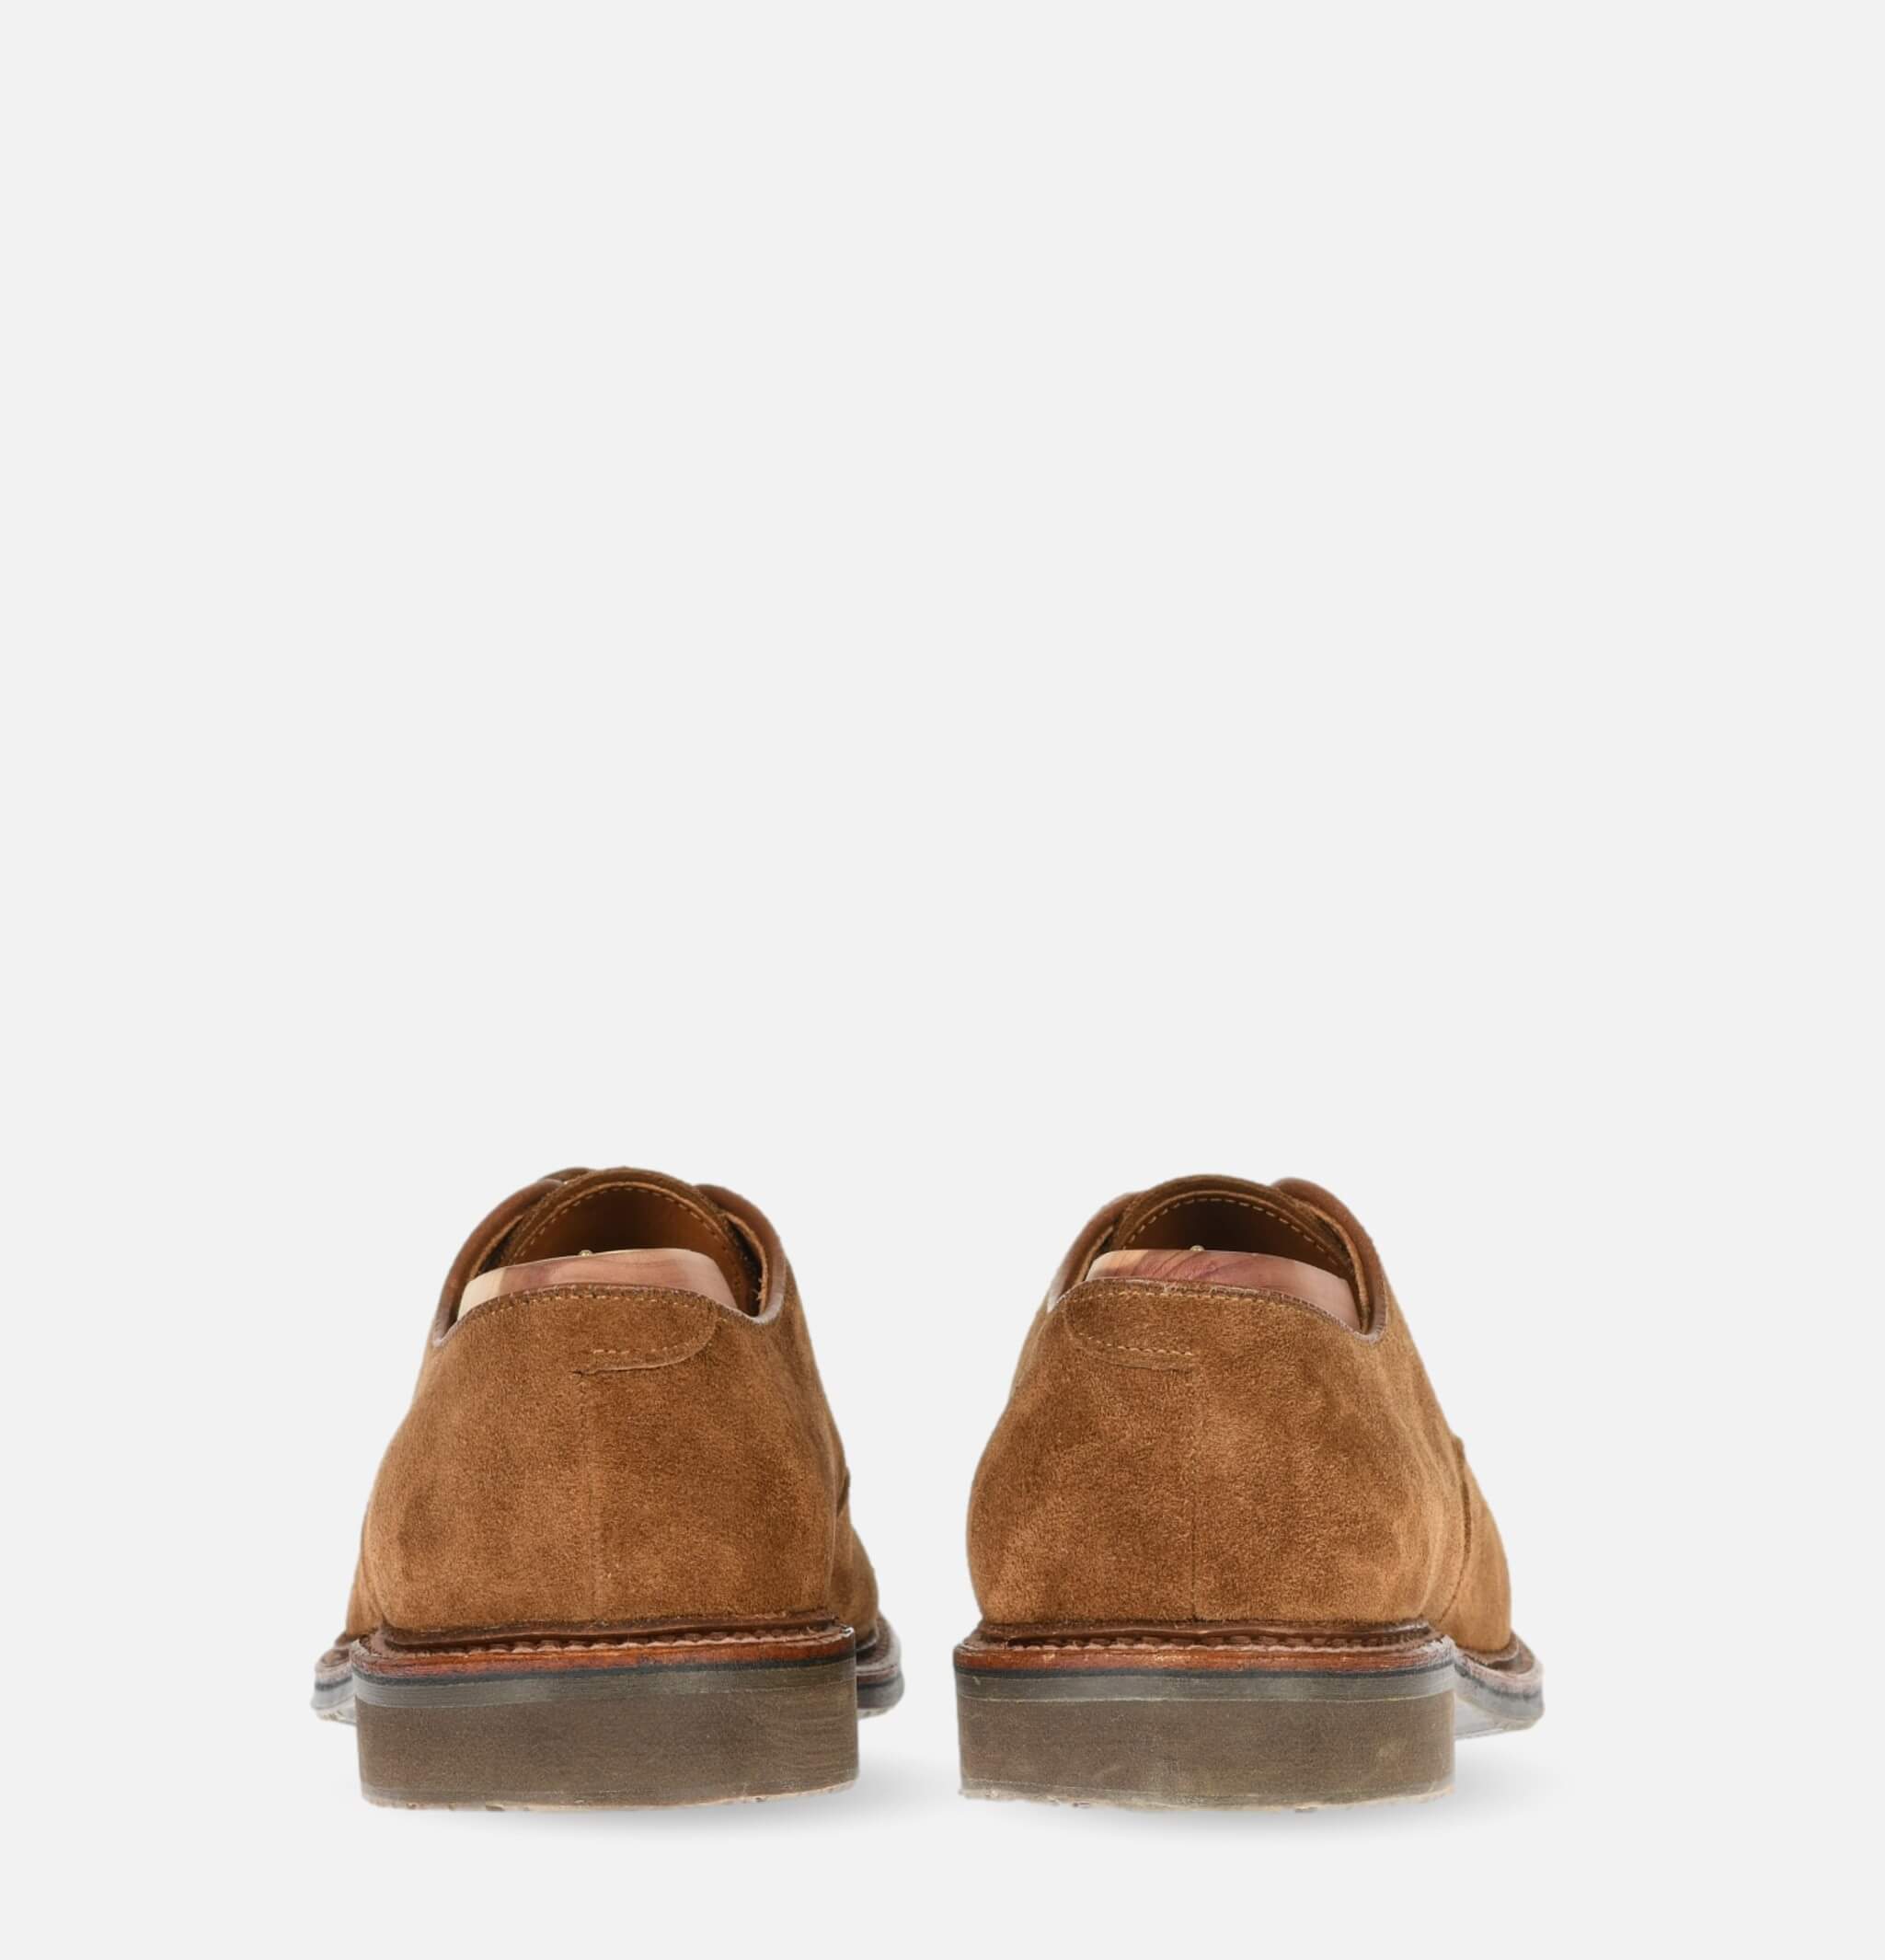 702R - Plain Toe Shoes Snuff Suede